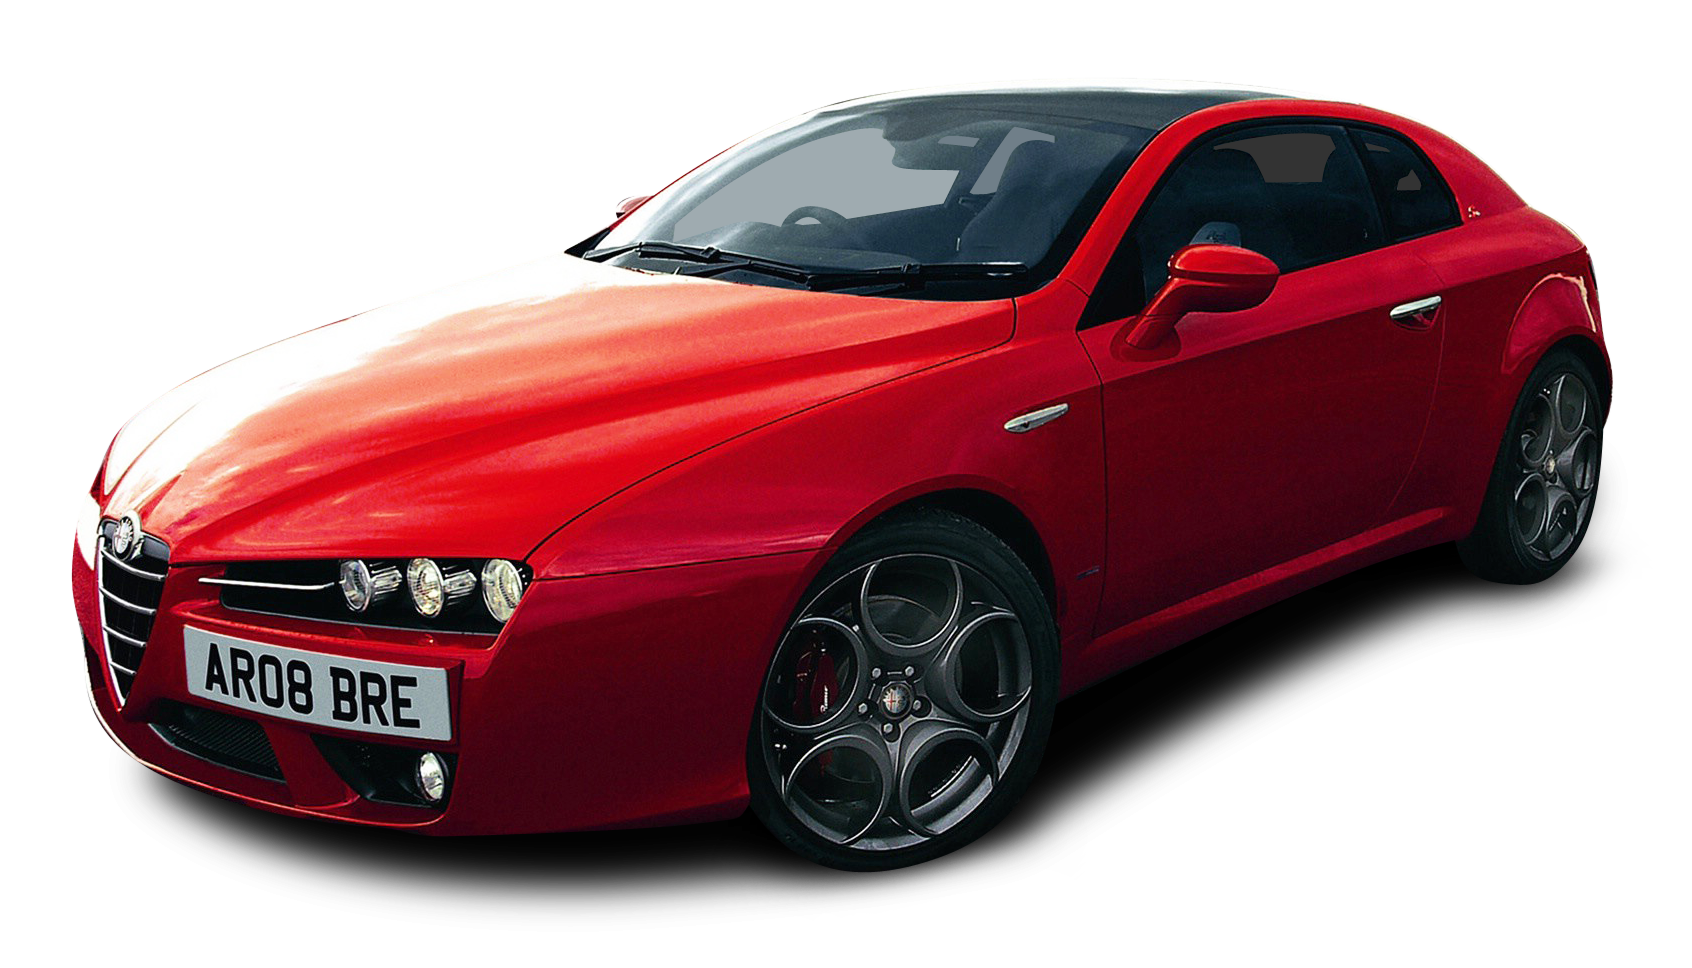 Red Alfa Romeo Brera S Car Png Image Purepng Free Tra - vrogue.co